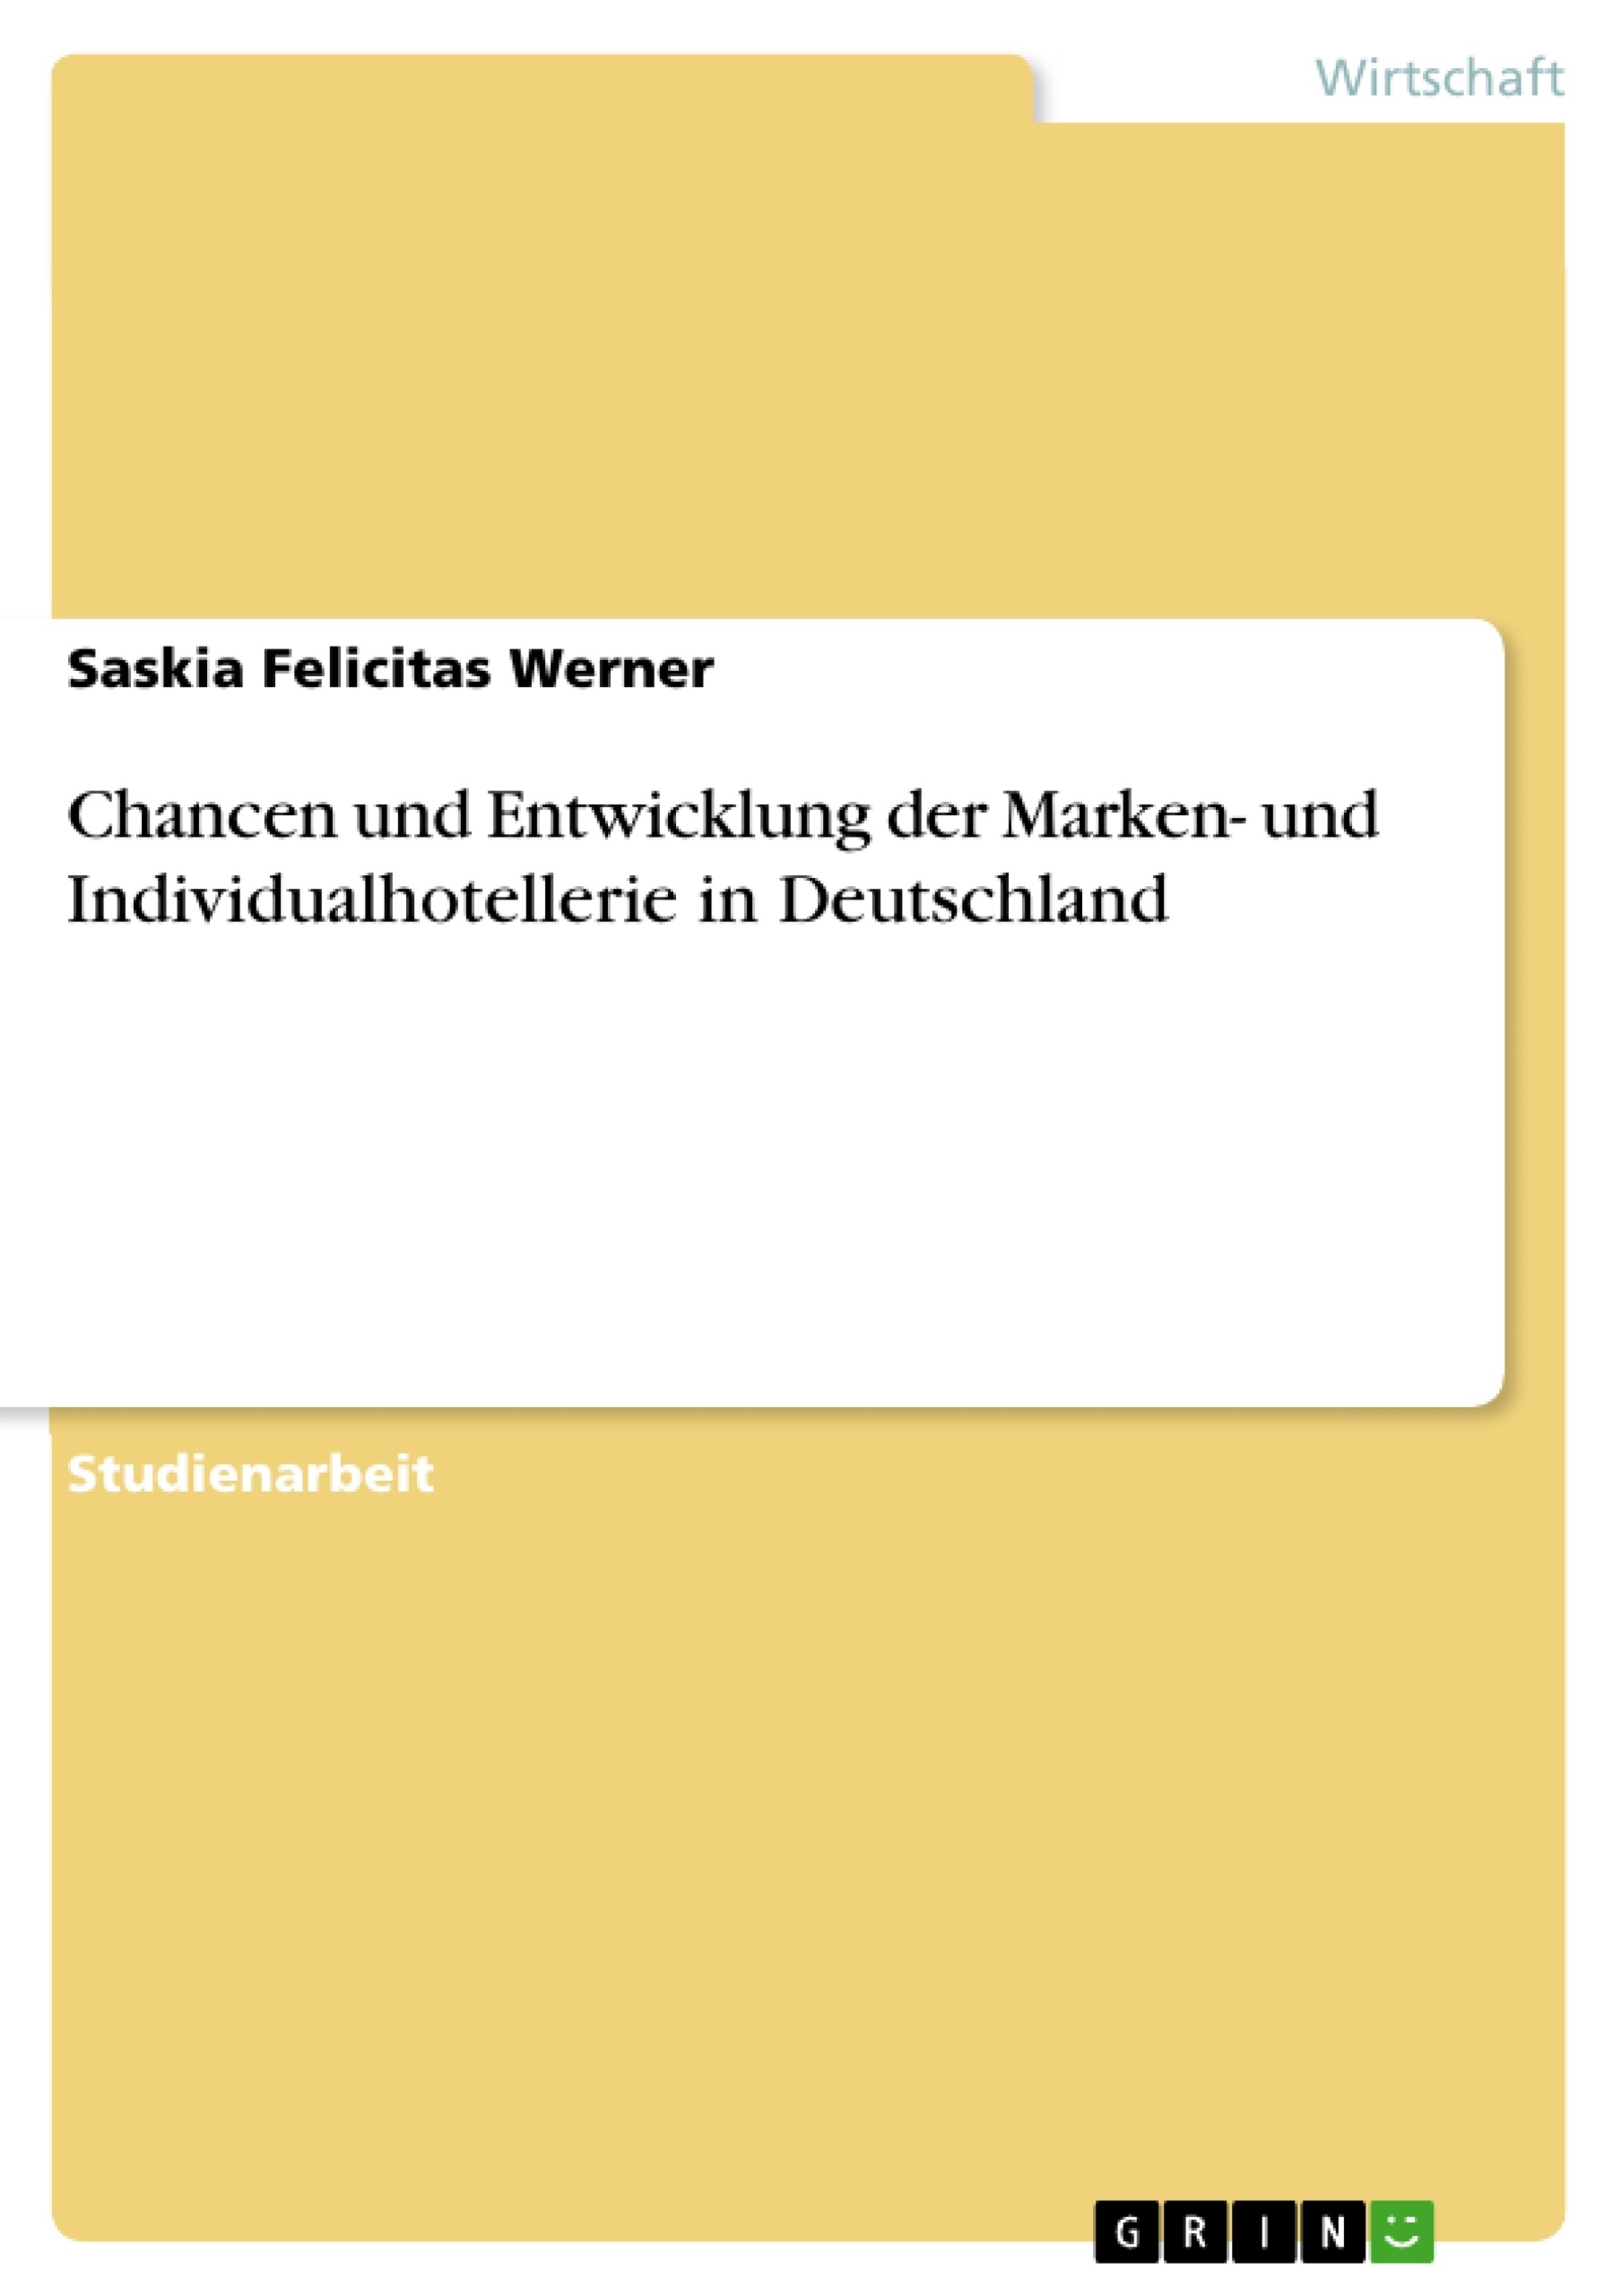 Título: Chancen und Entwicklung der Marken- und Individualhotellerie in Deutschland